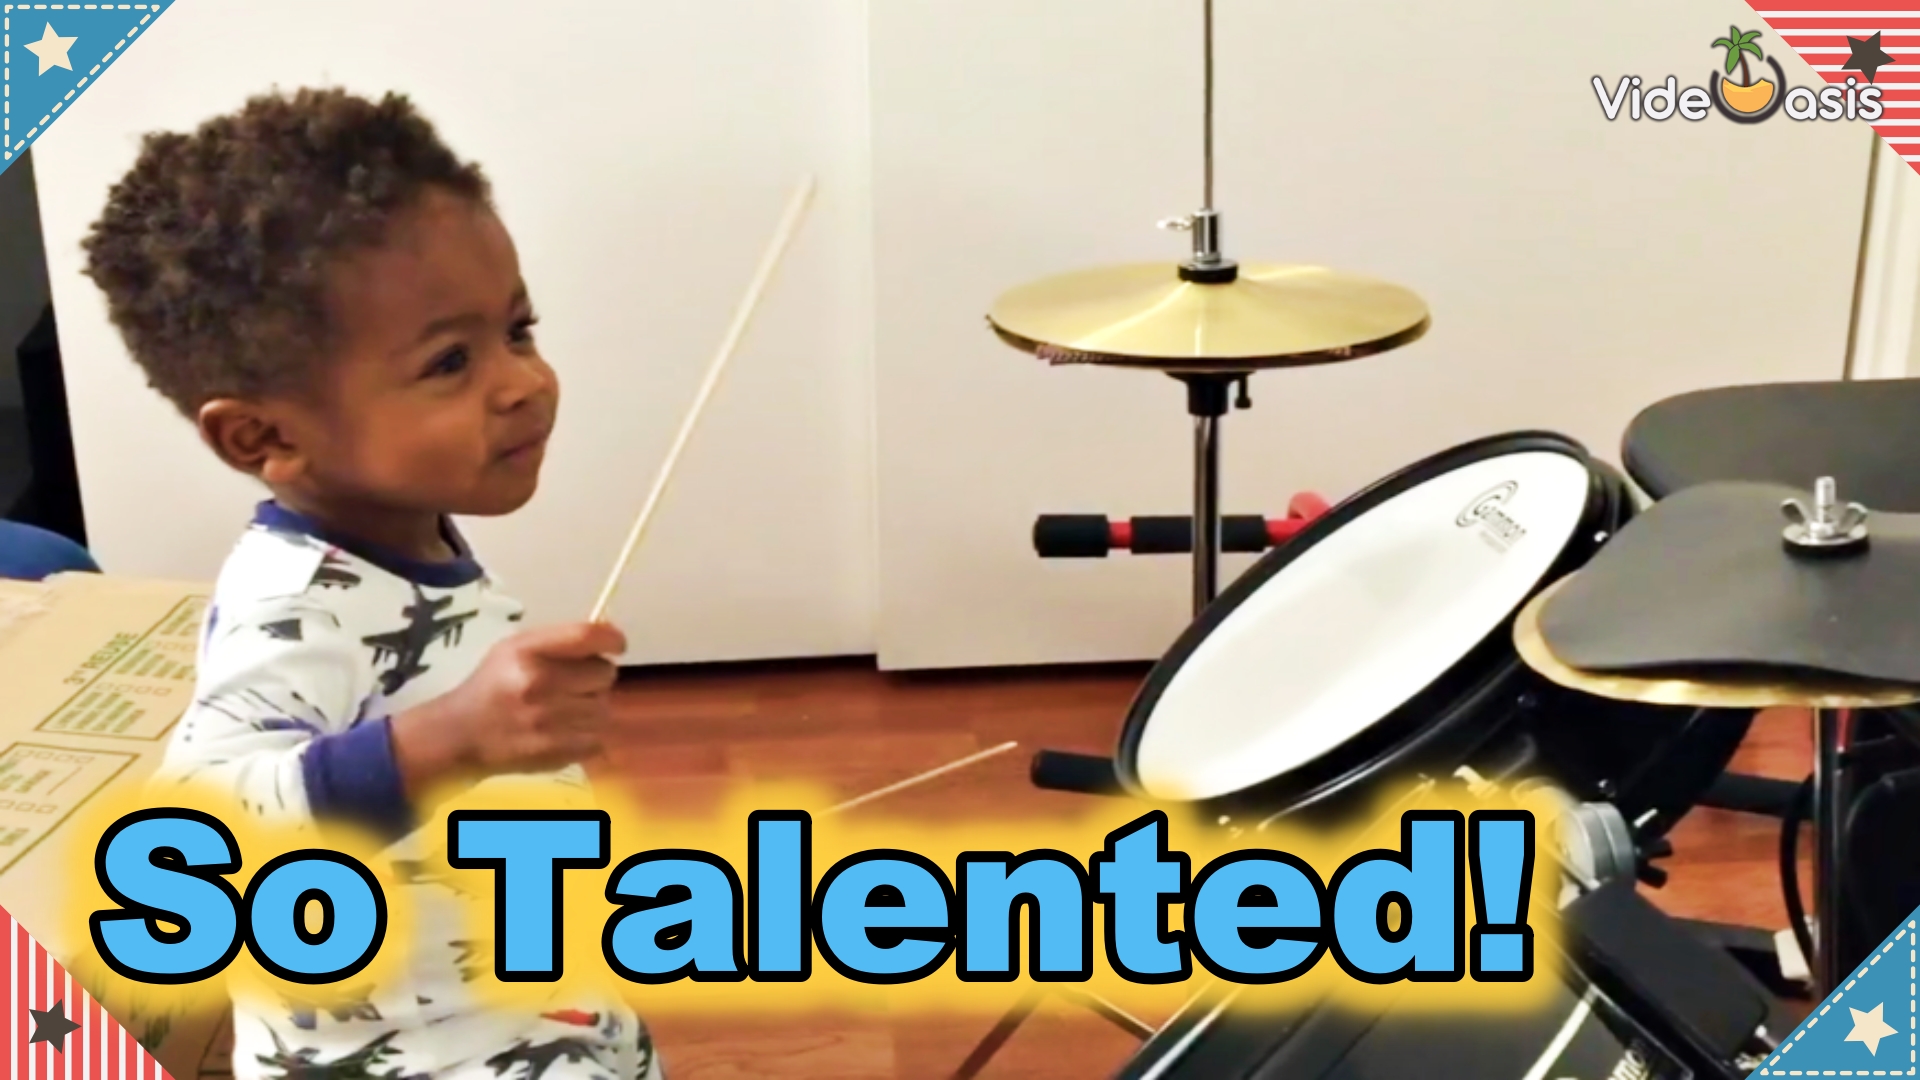 3 Talented Children｜VideOasis